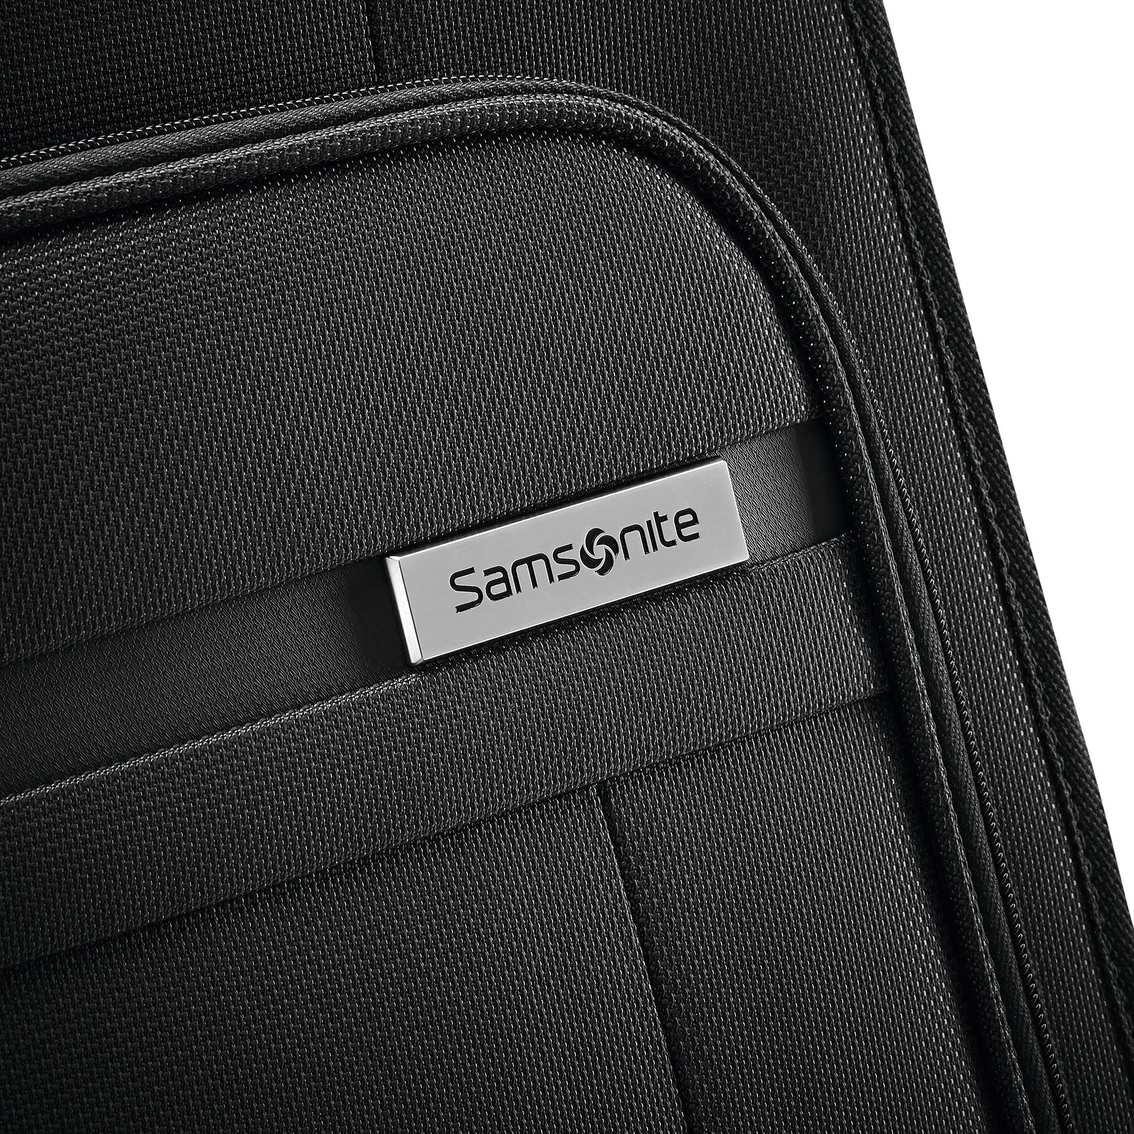 Samsonite Insignis Garment Bag - Image 7 of 8